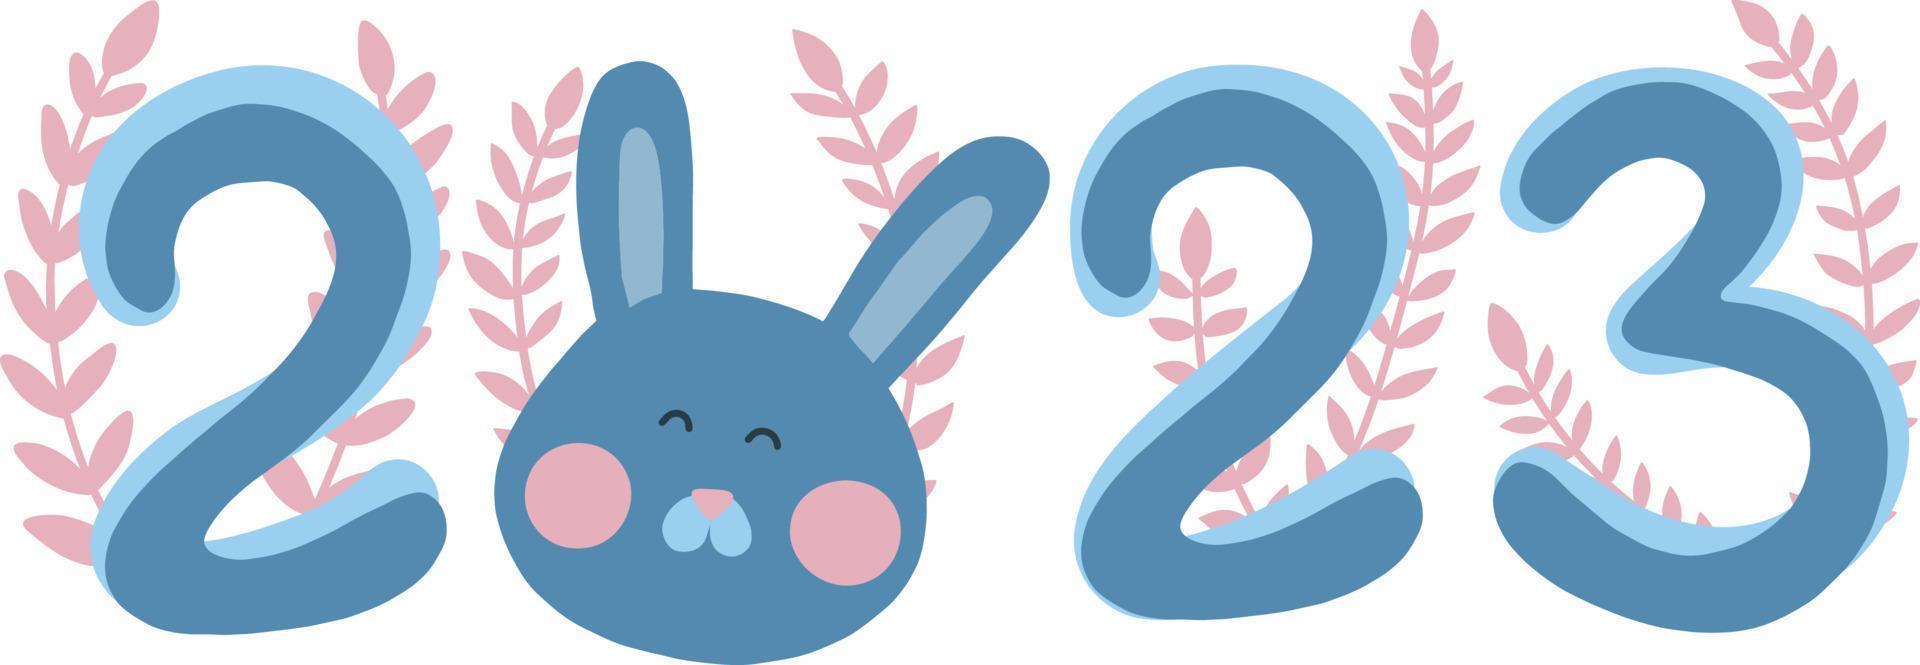 2023 jaar haas. grote blauwe cijfers met konijntje en roze bladeren. Chinees Nieuwjaar symbool, feestelijke wenskaart. vectorillustratie geïsoleerd op een witte achtergrond vector